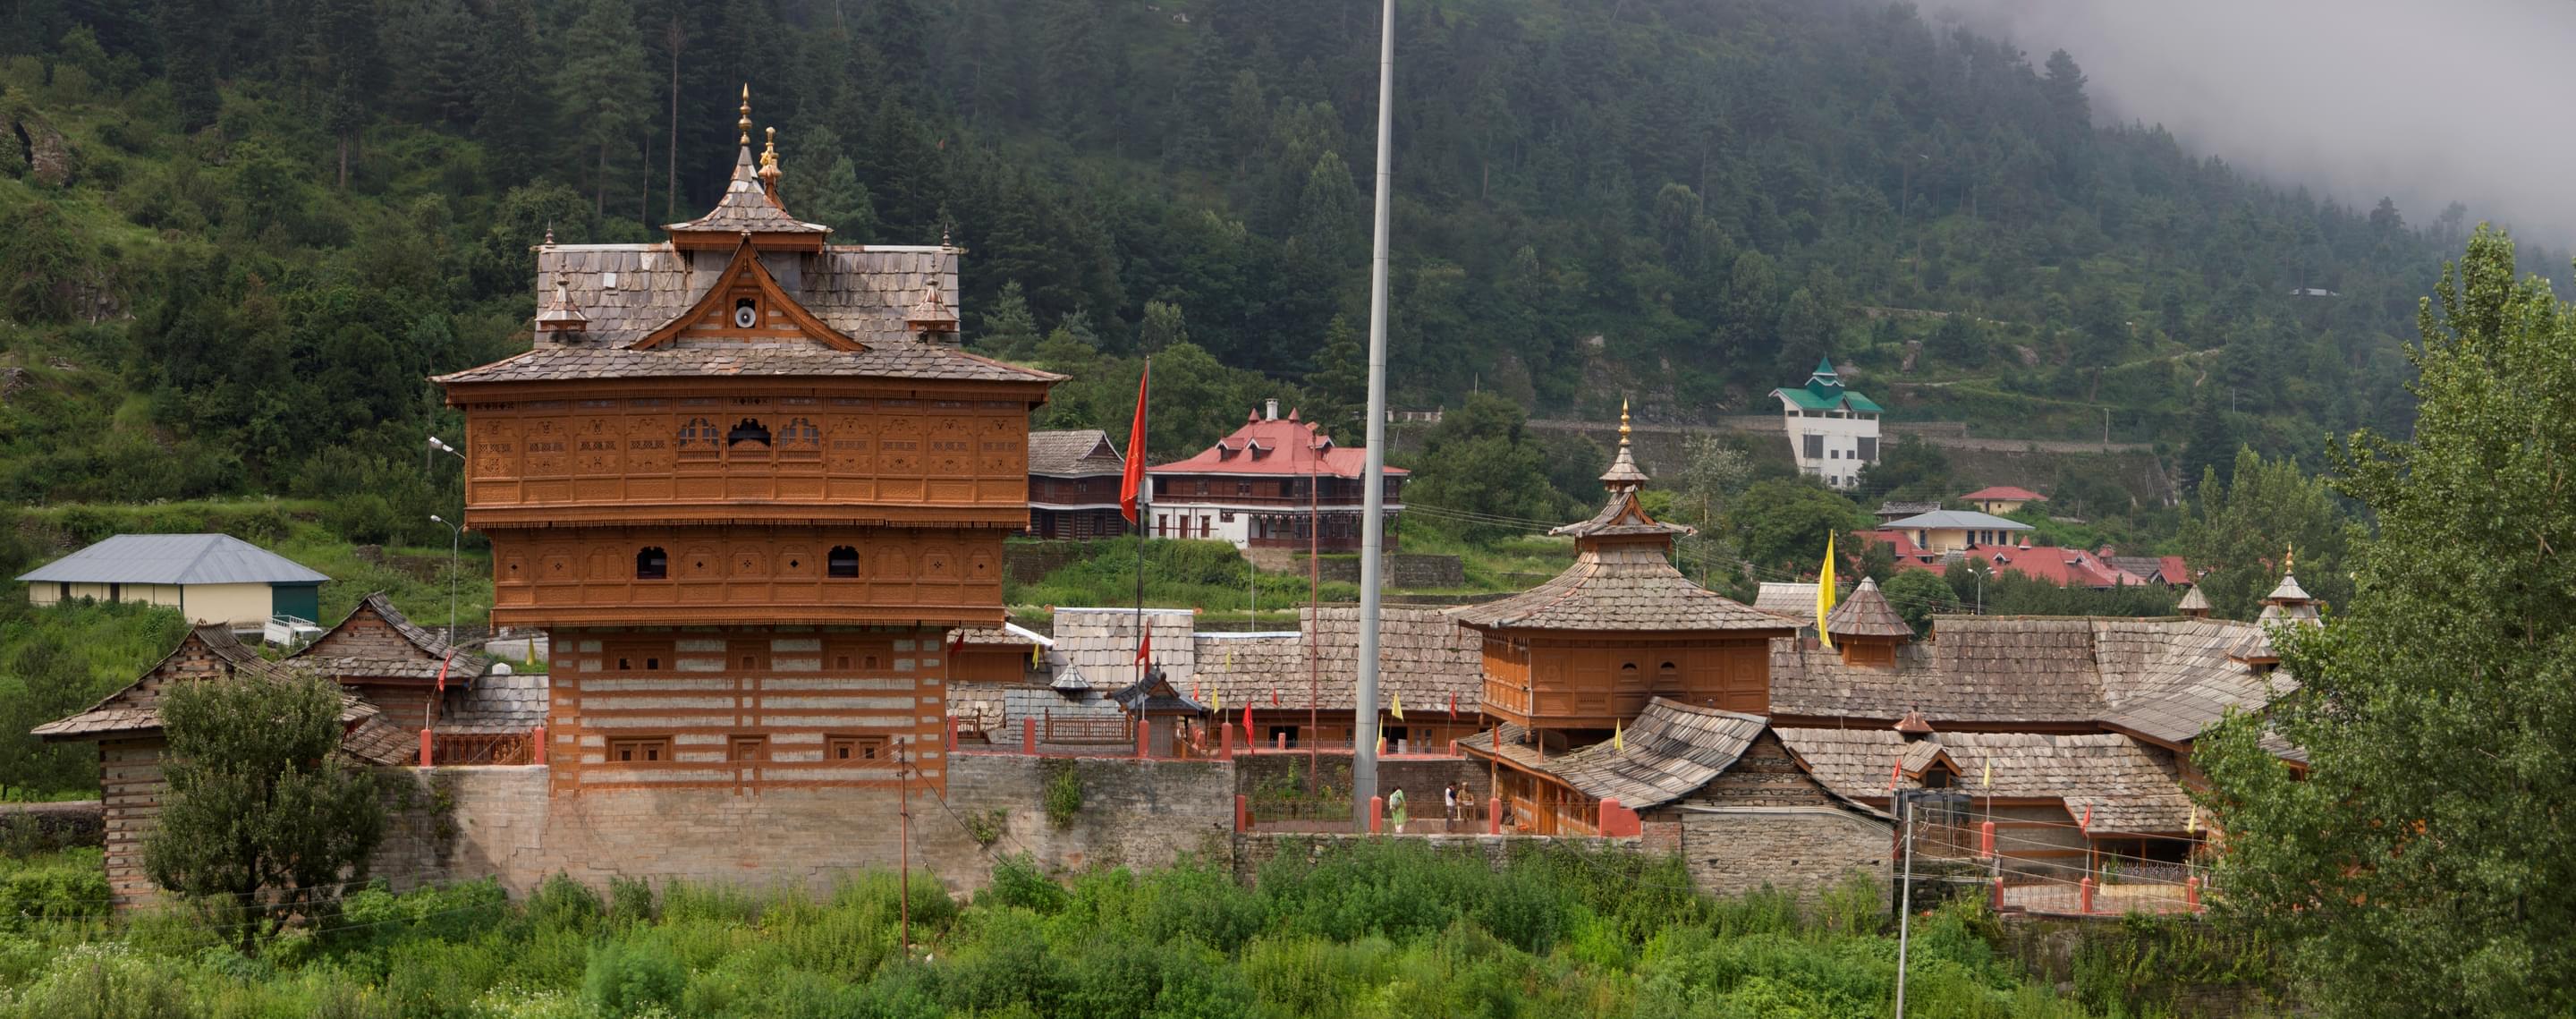 Shri Bhima Kali Ji Temple Overview